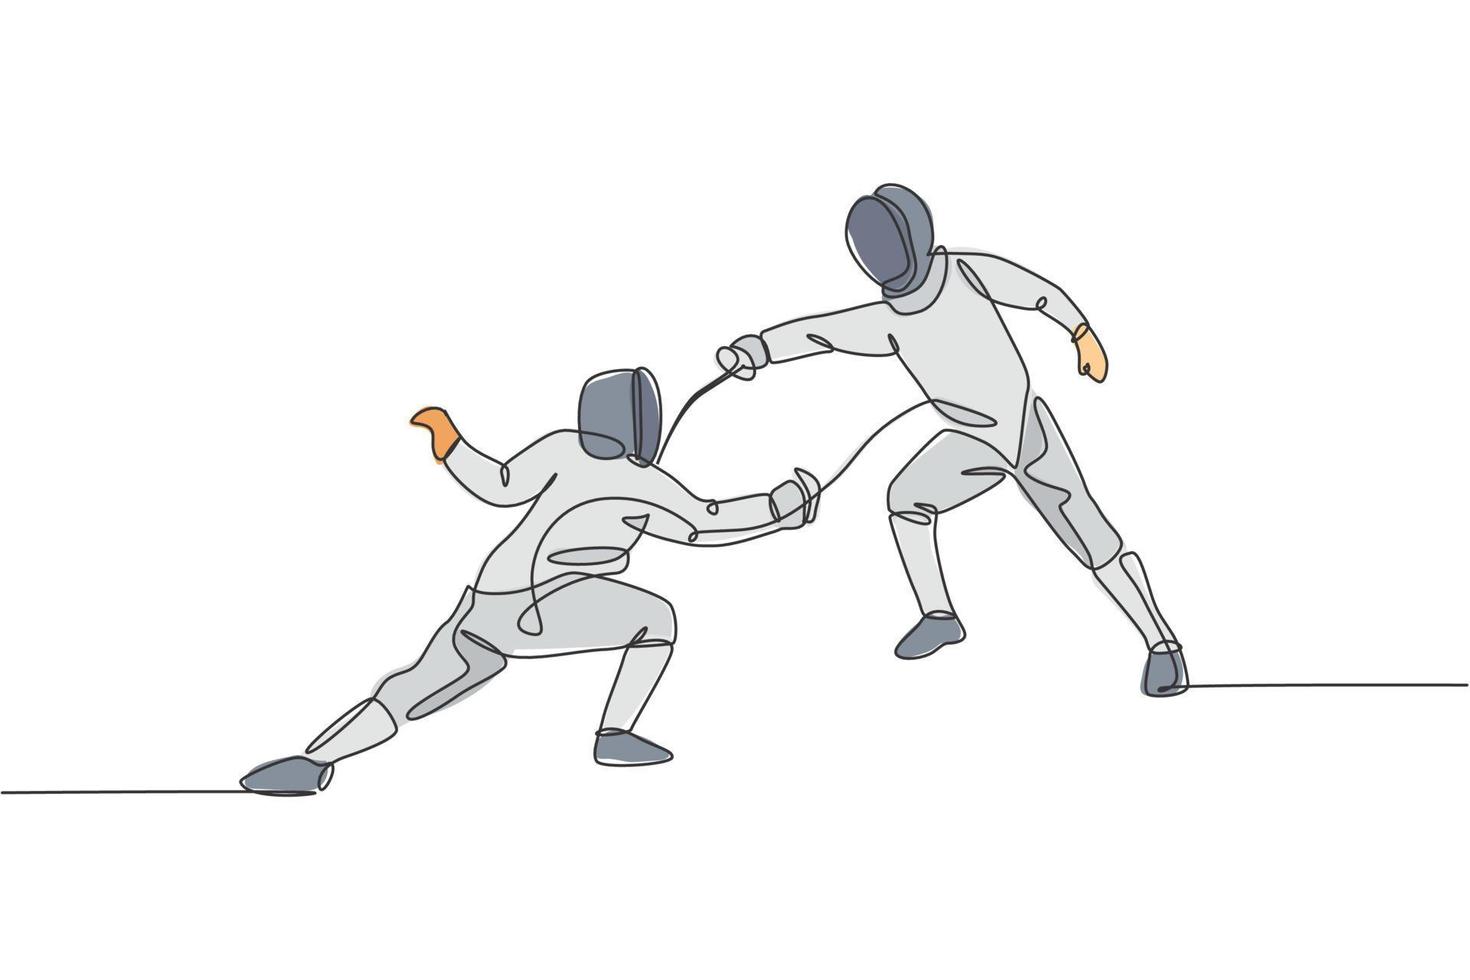 um desenho de linha contínua de dois jovens esgrima atleta pratica ação de luta na arena esportiva. fantasia de esgrima e segurando o conceito de espada. ilustração em vetor design de desenho de linha única dinâmica